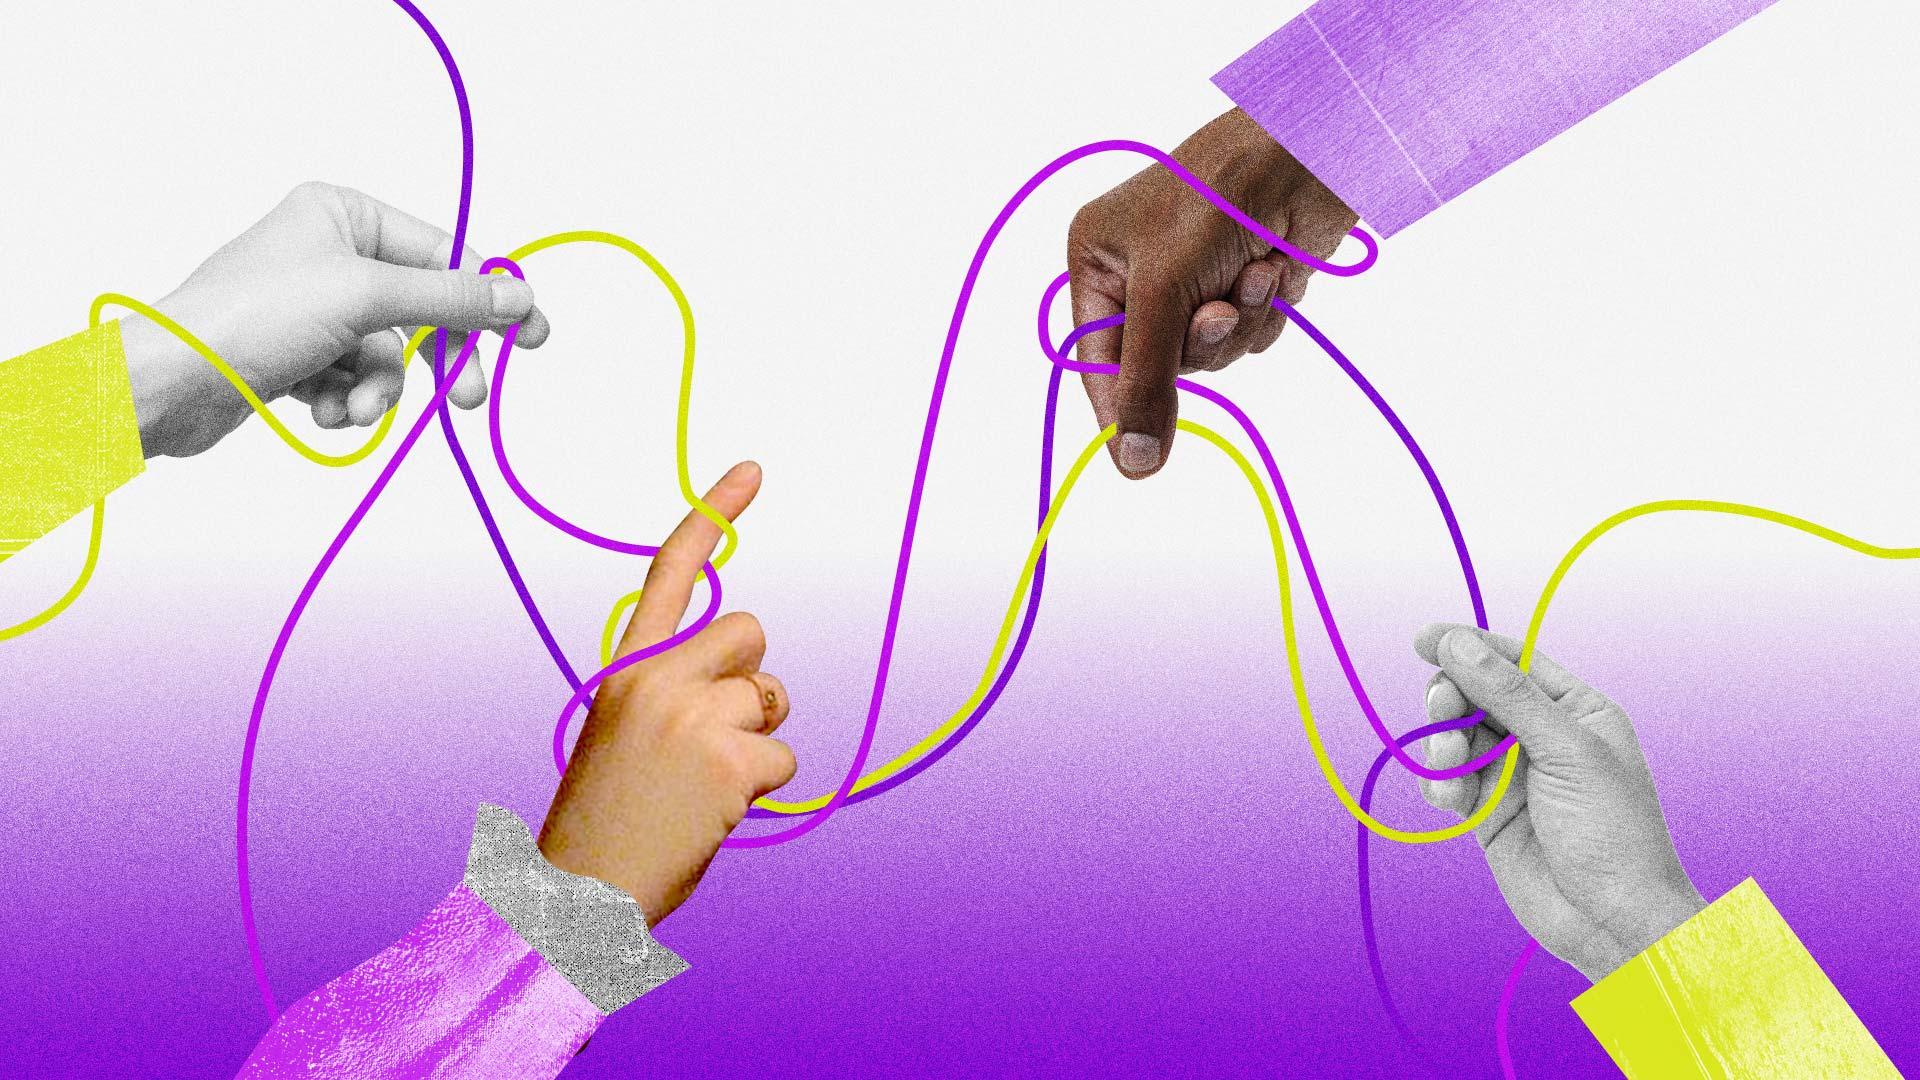 Ilustração em que diferentes mãos puxam fios embaralhados de diferentes cores